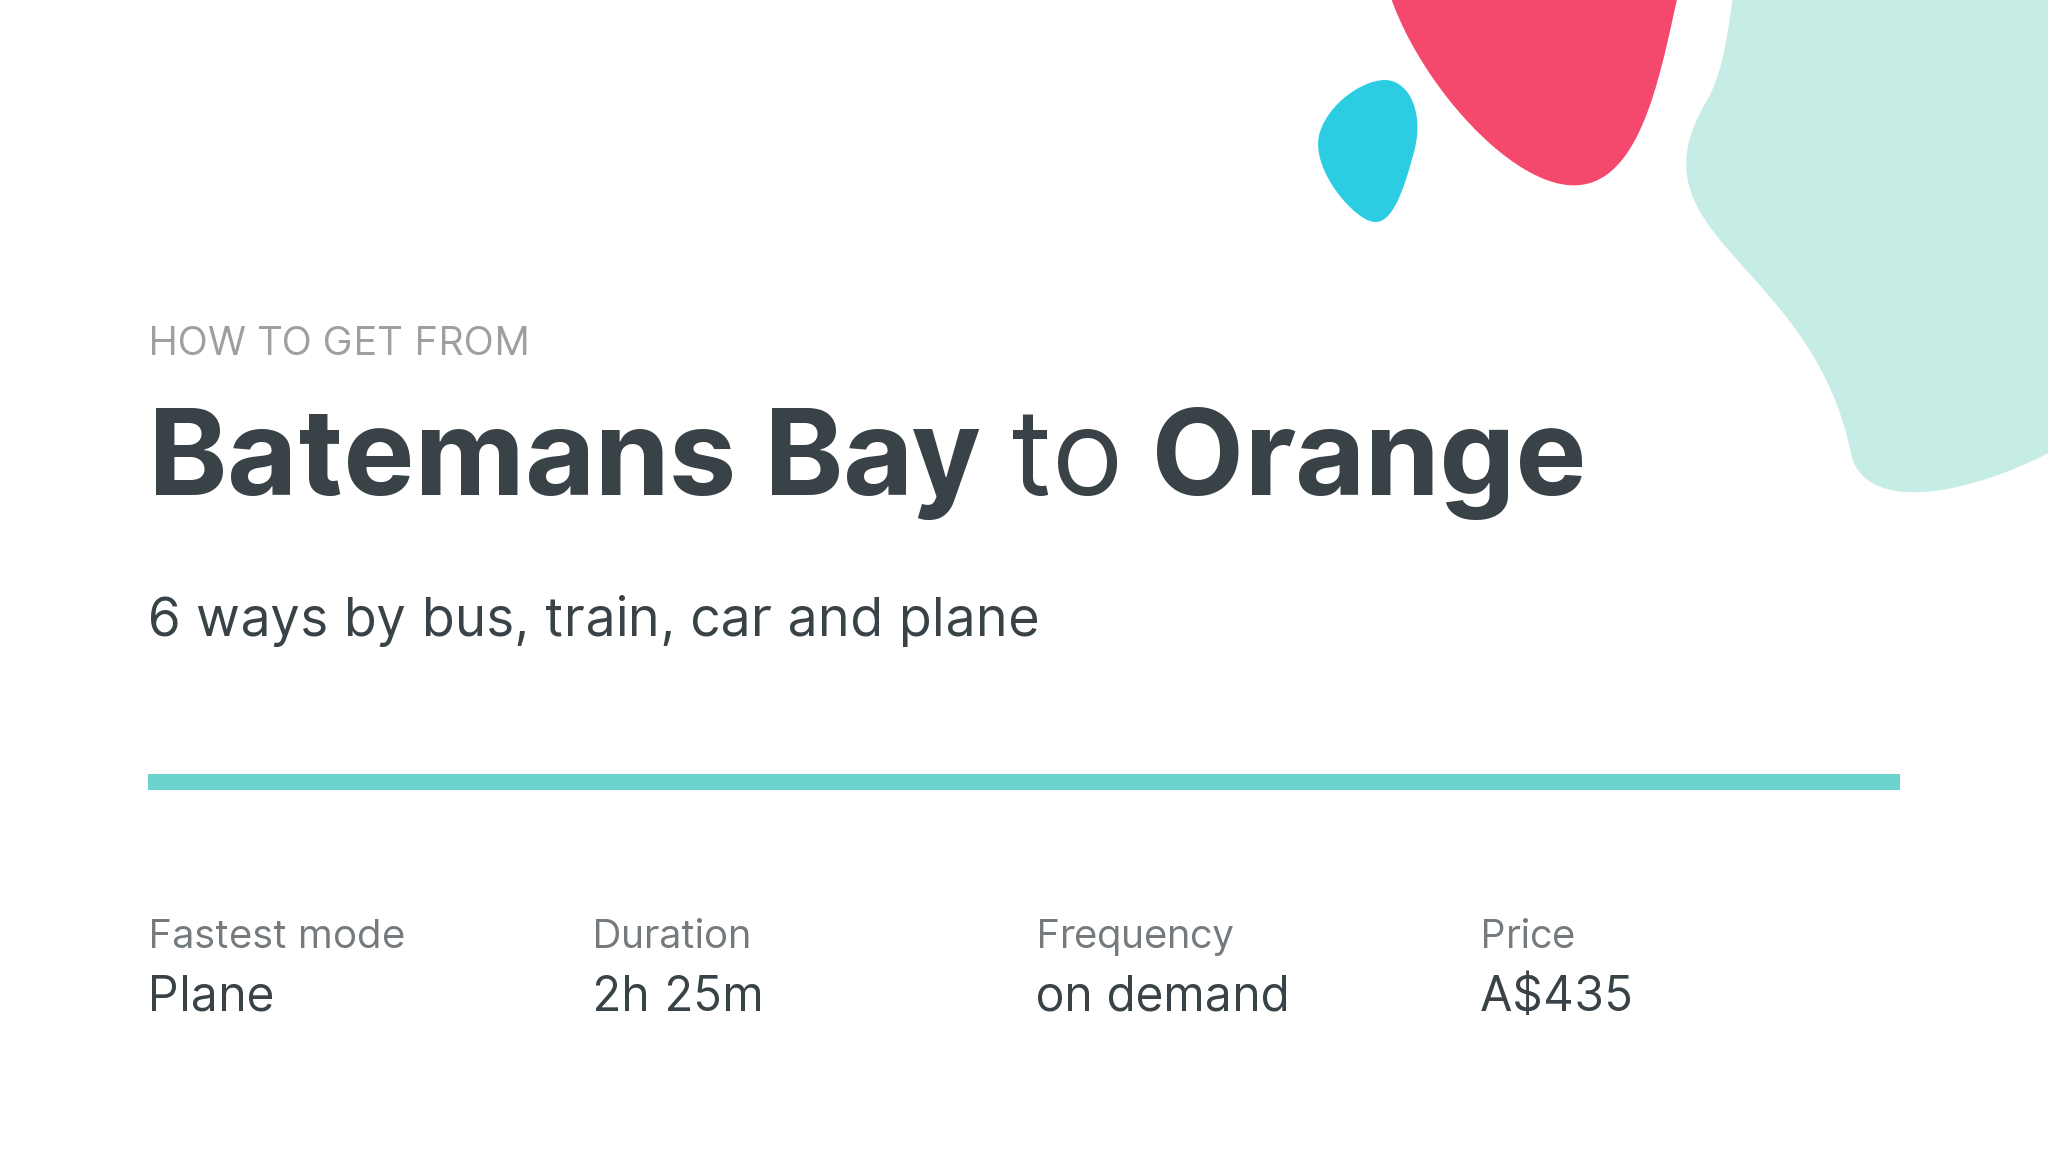 How do I get from Batemans Bay to Orange